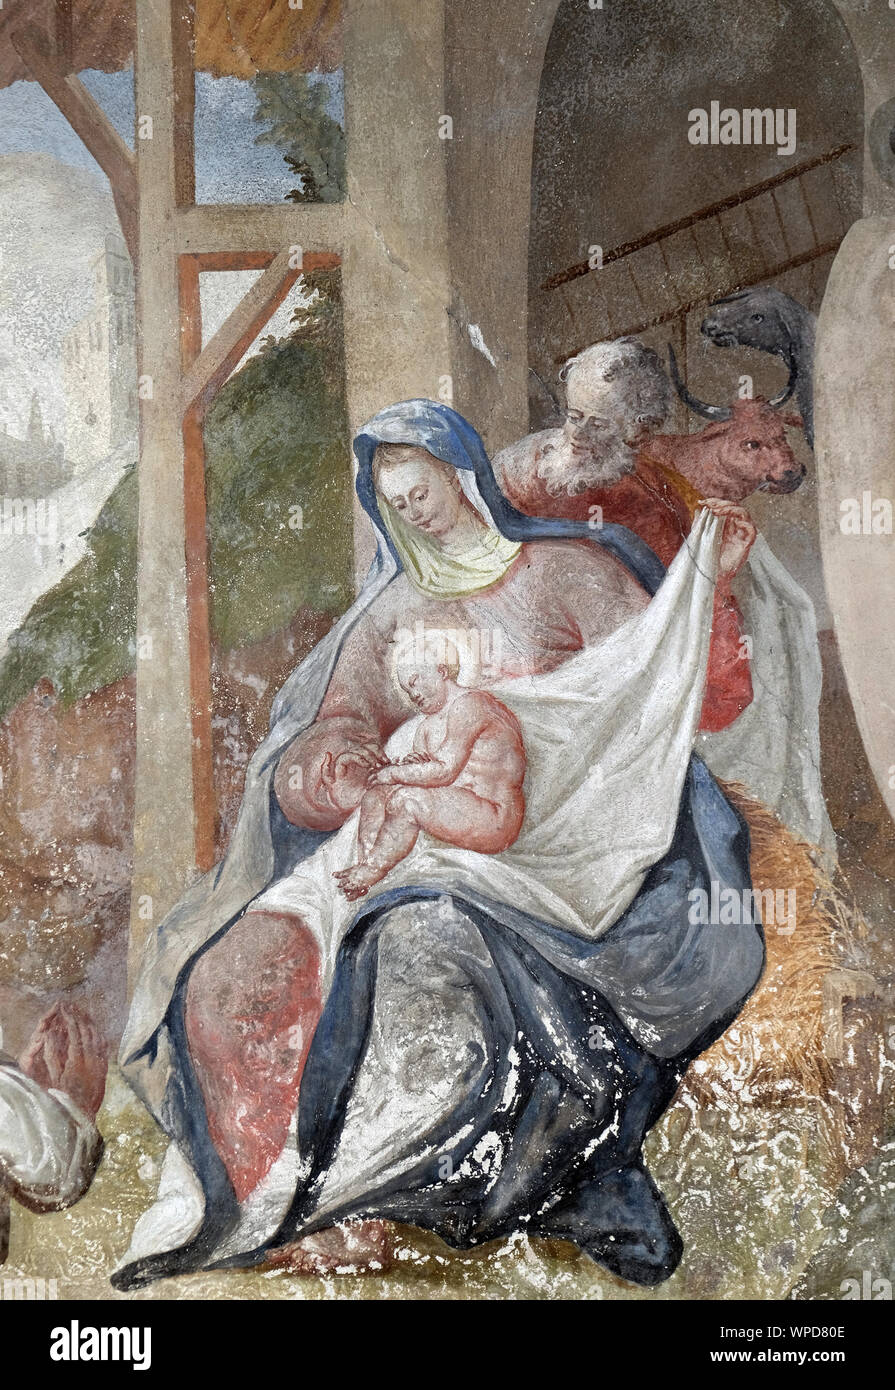 Scena della natività, la nascita di Gesù, affresco sul soffitto di San Giovanni Battista a Zagabria in Croazia Foto Stock